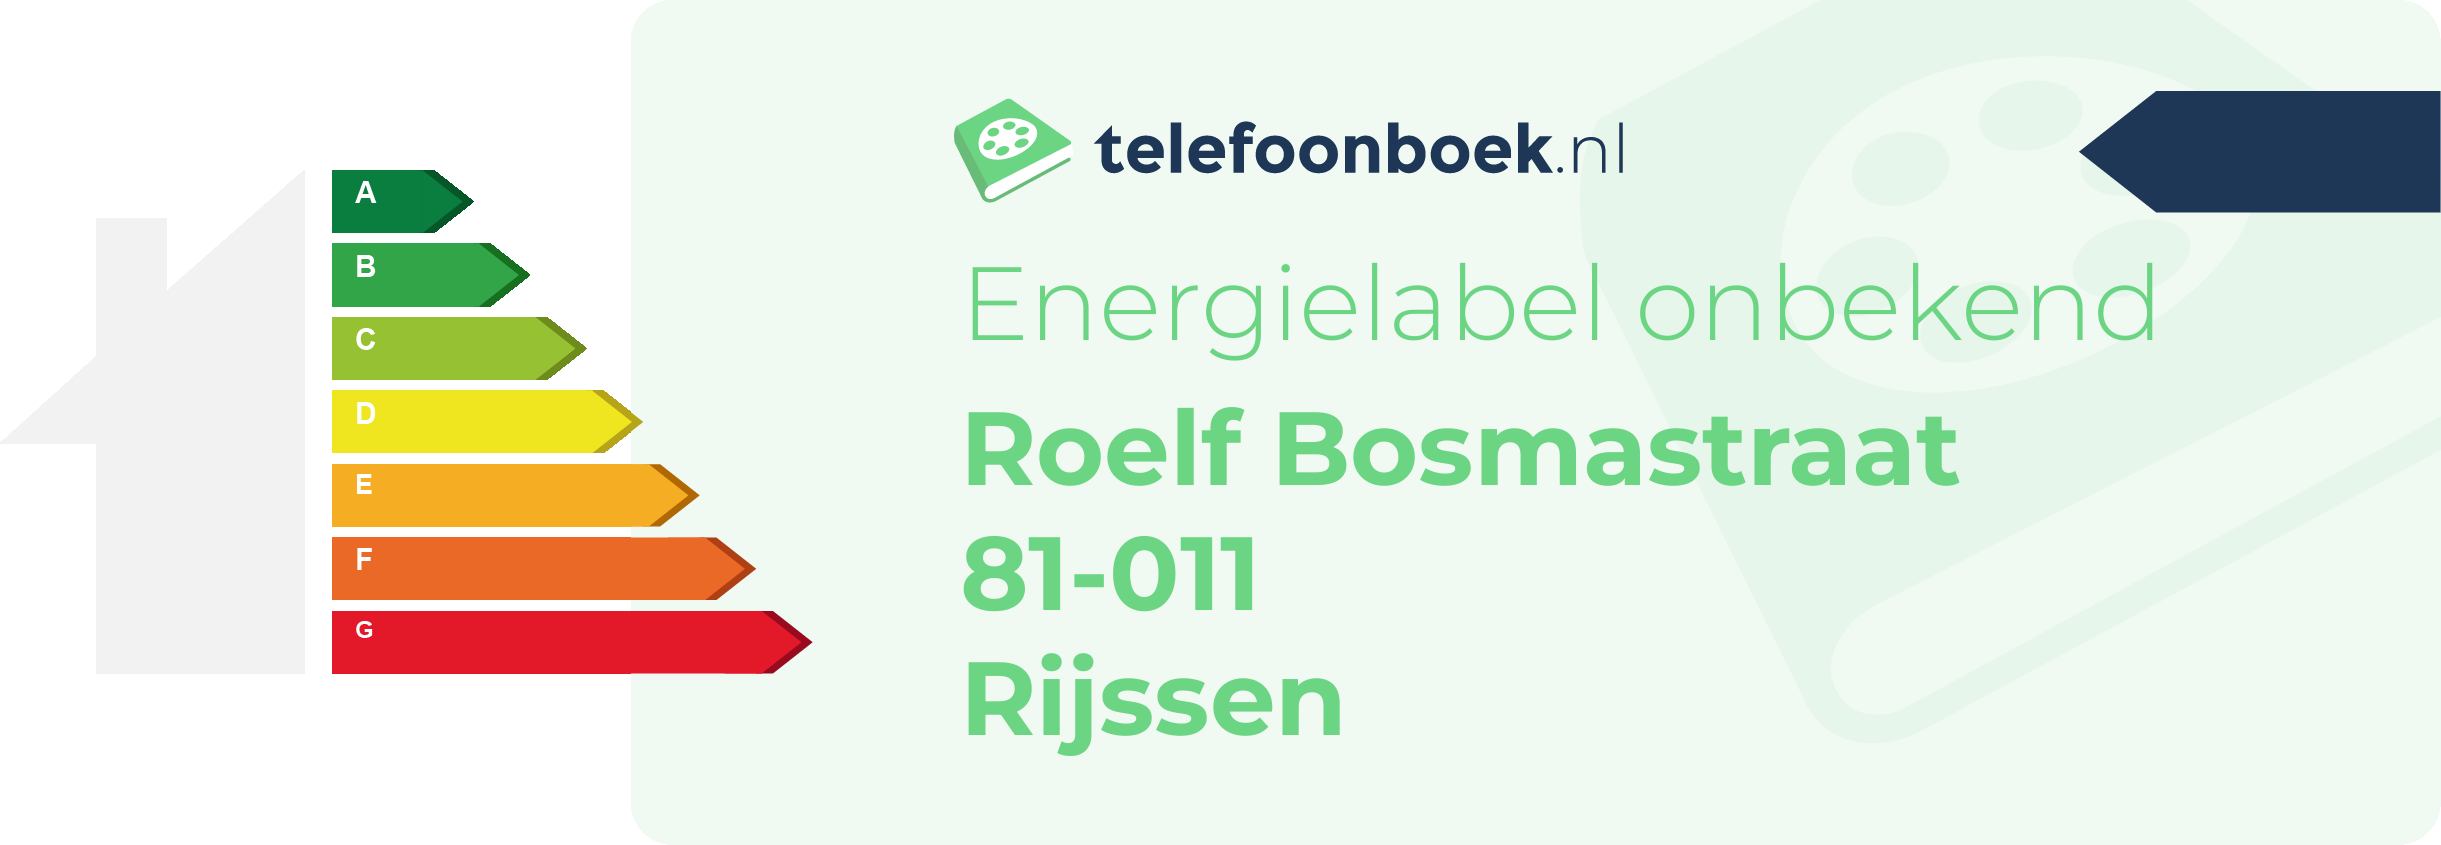 Energielabel Roelf Bosmastraat 81-011 Rijssen